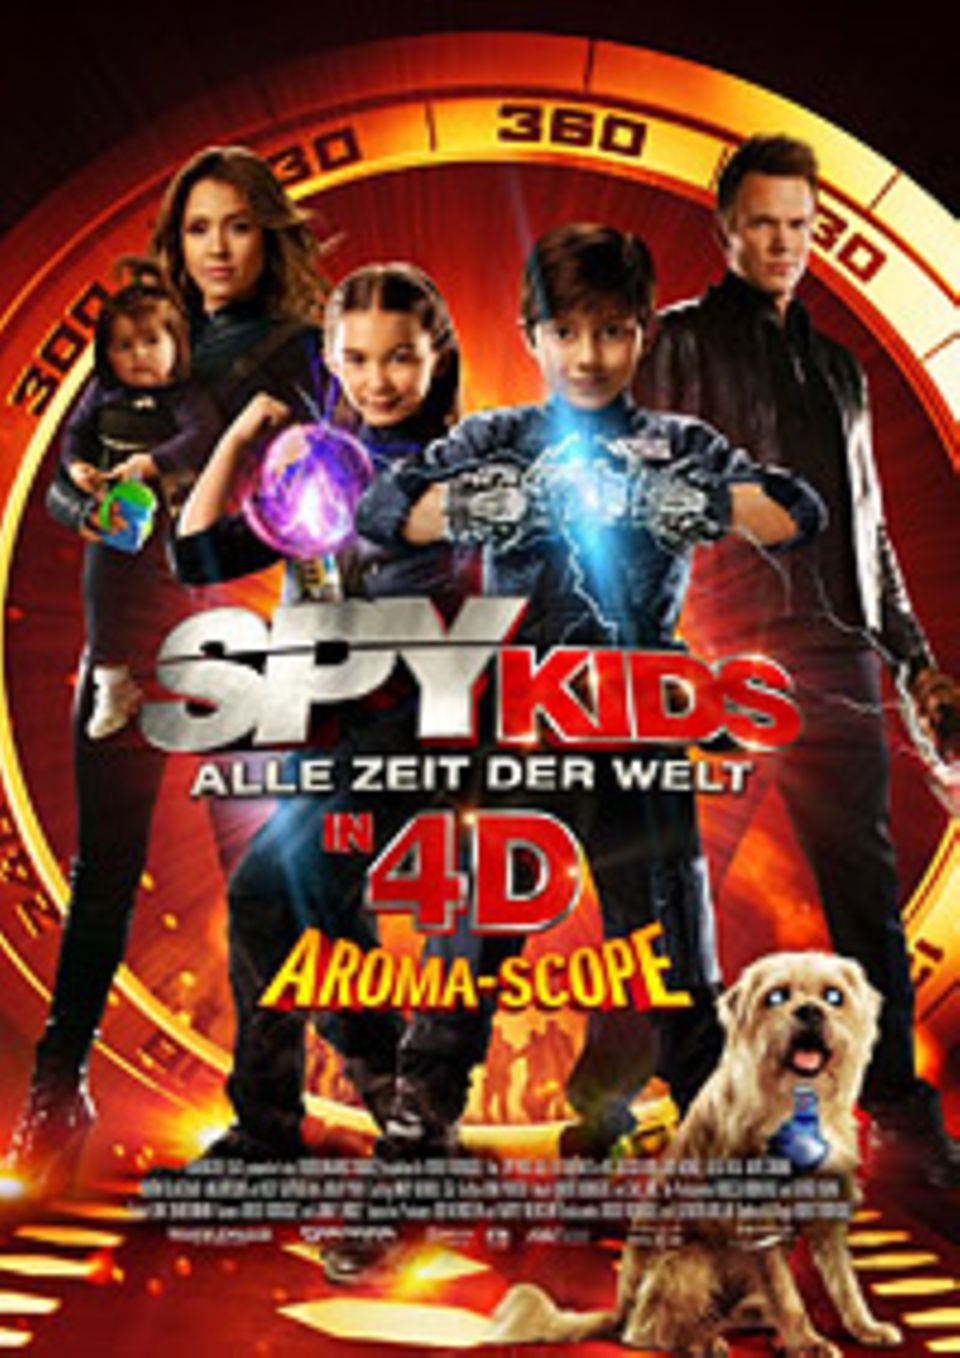 Kinotipp: Das Plakat zum Kinofilm: "Spy Kids 4D" ist spannende Unterhaltung für die ganze Familie